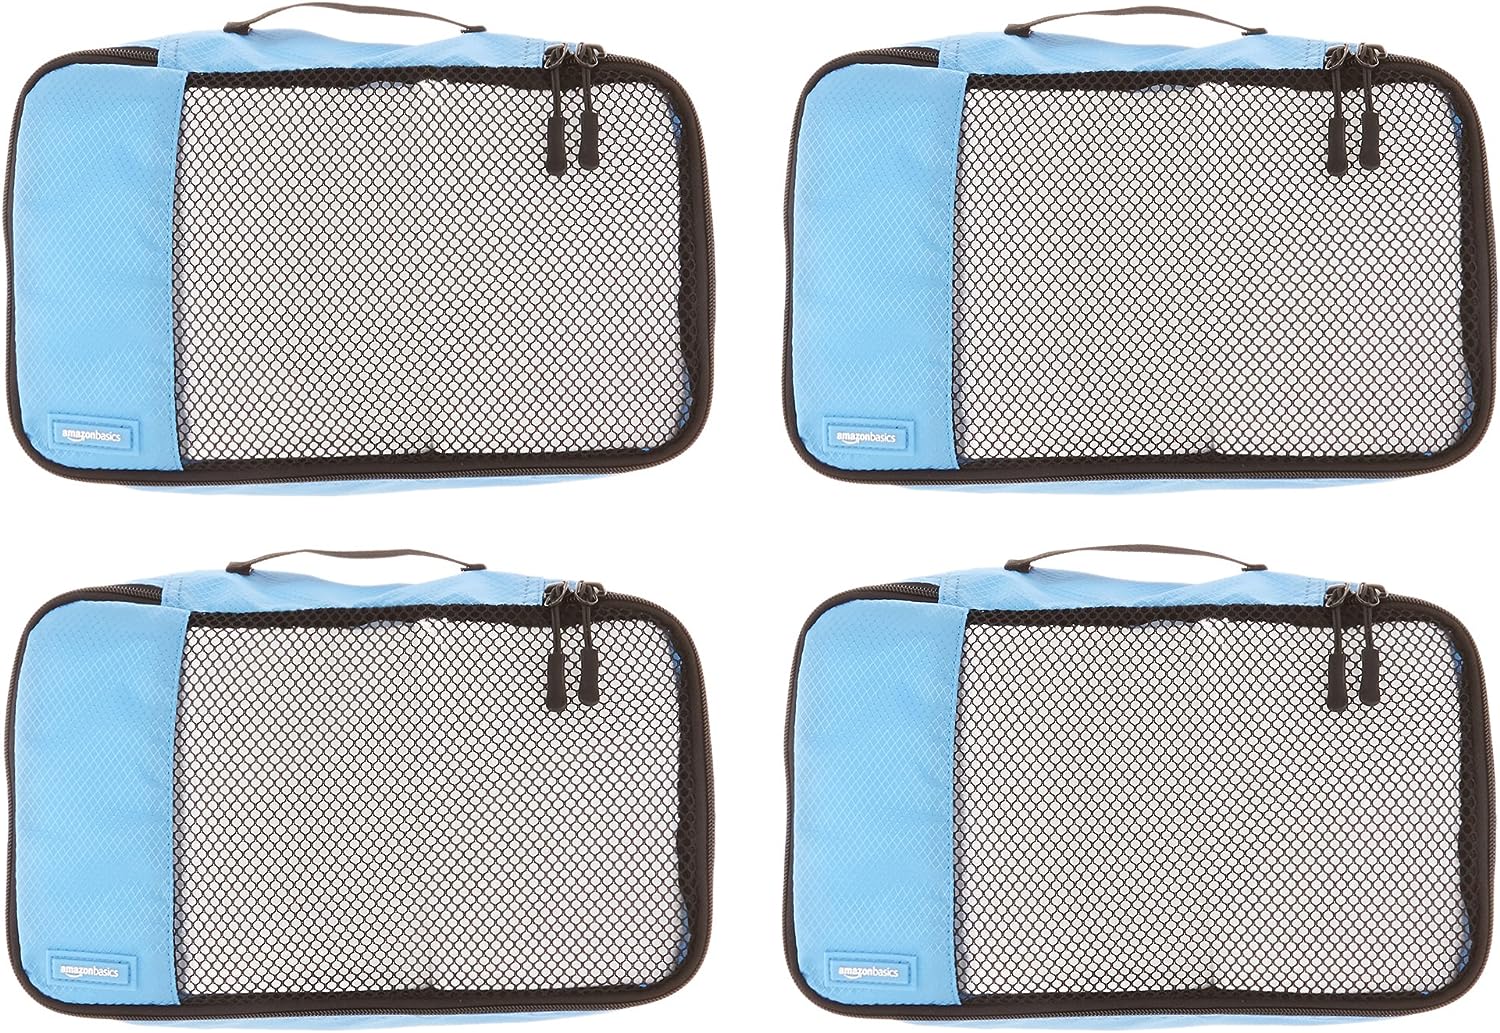 Amazon Basics + Amazon Basics Small Packing Travel Organizer Cubes Set